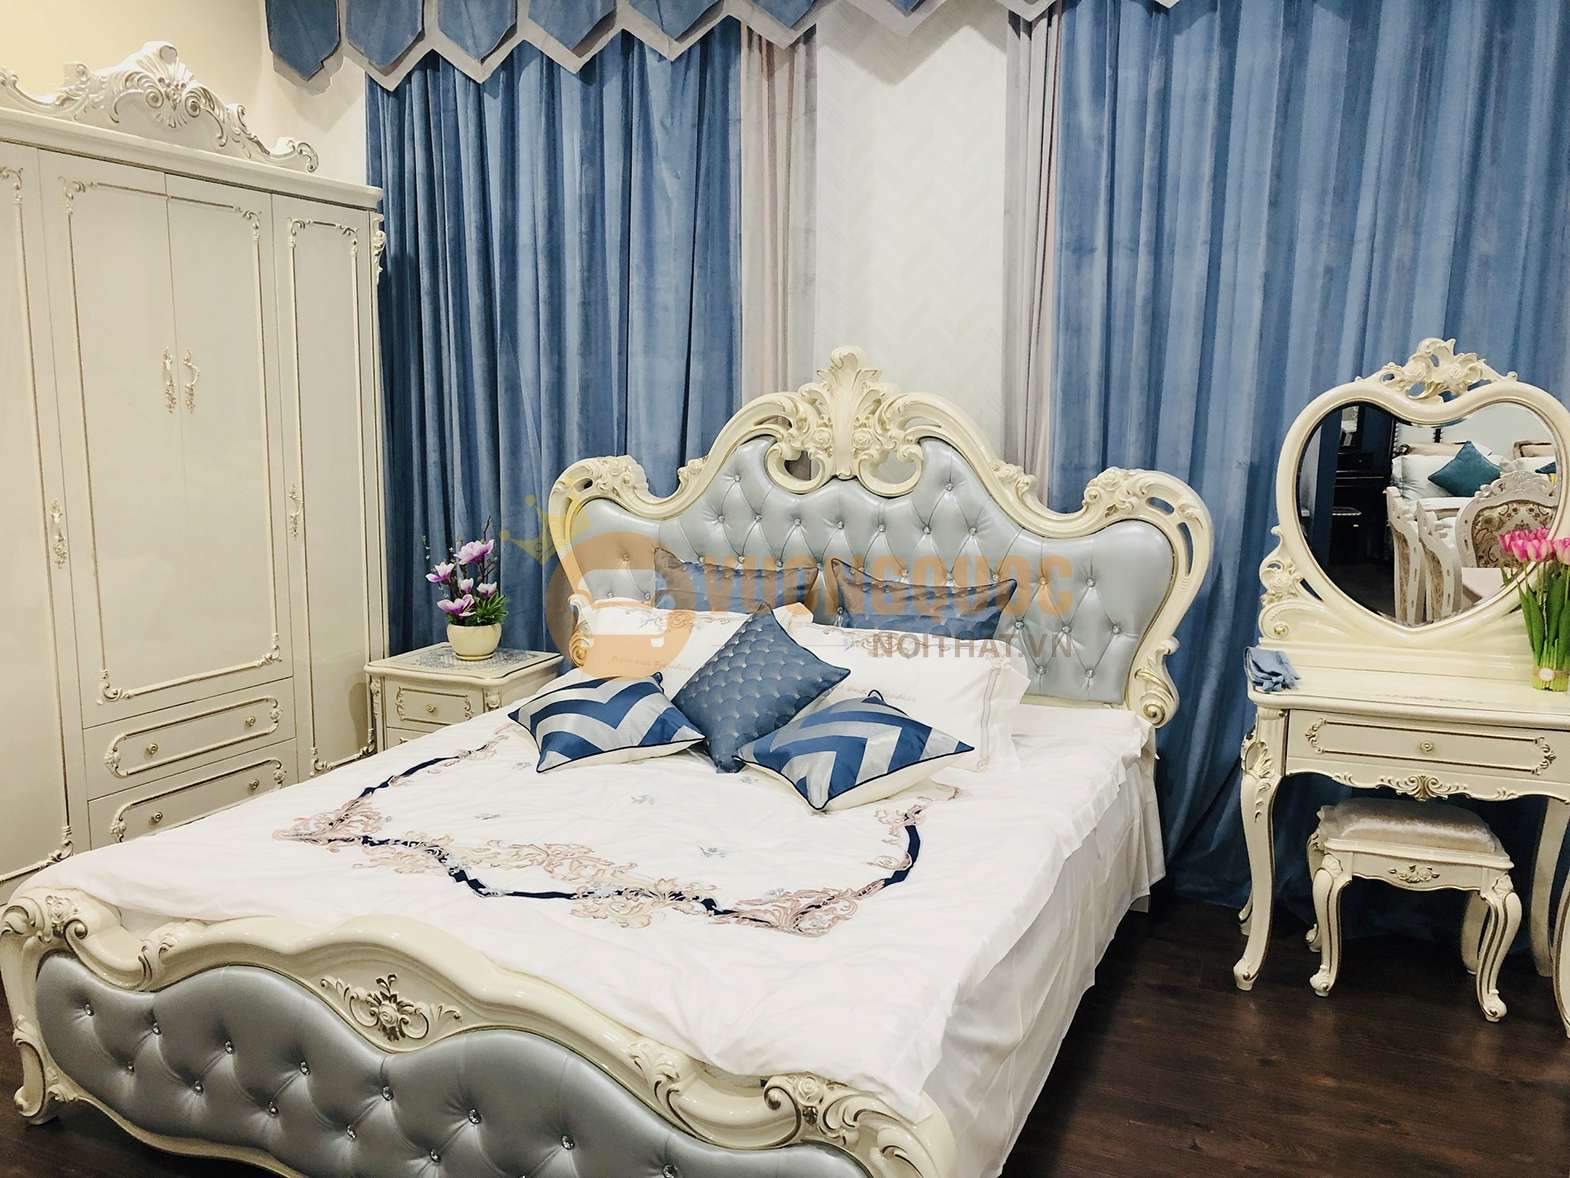 Giường ngủ tân cổ điển kiểu dáng quý tộc JVN618G thực tế